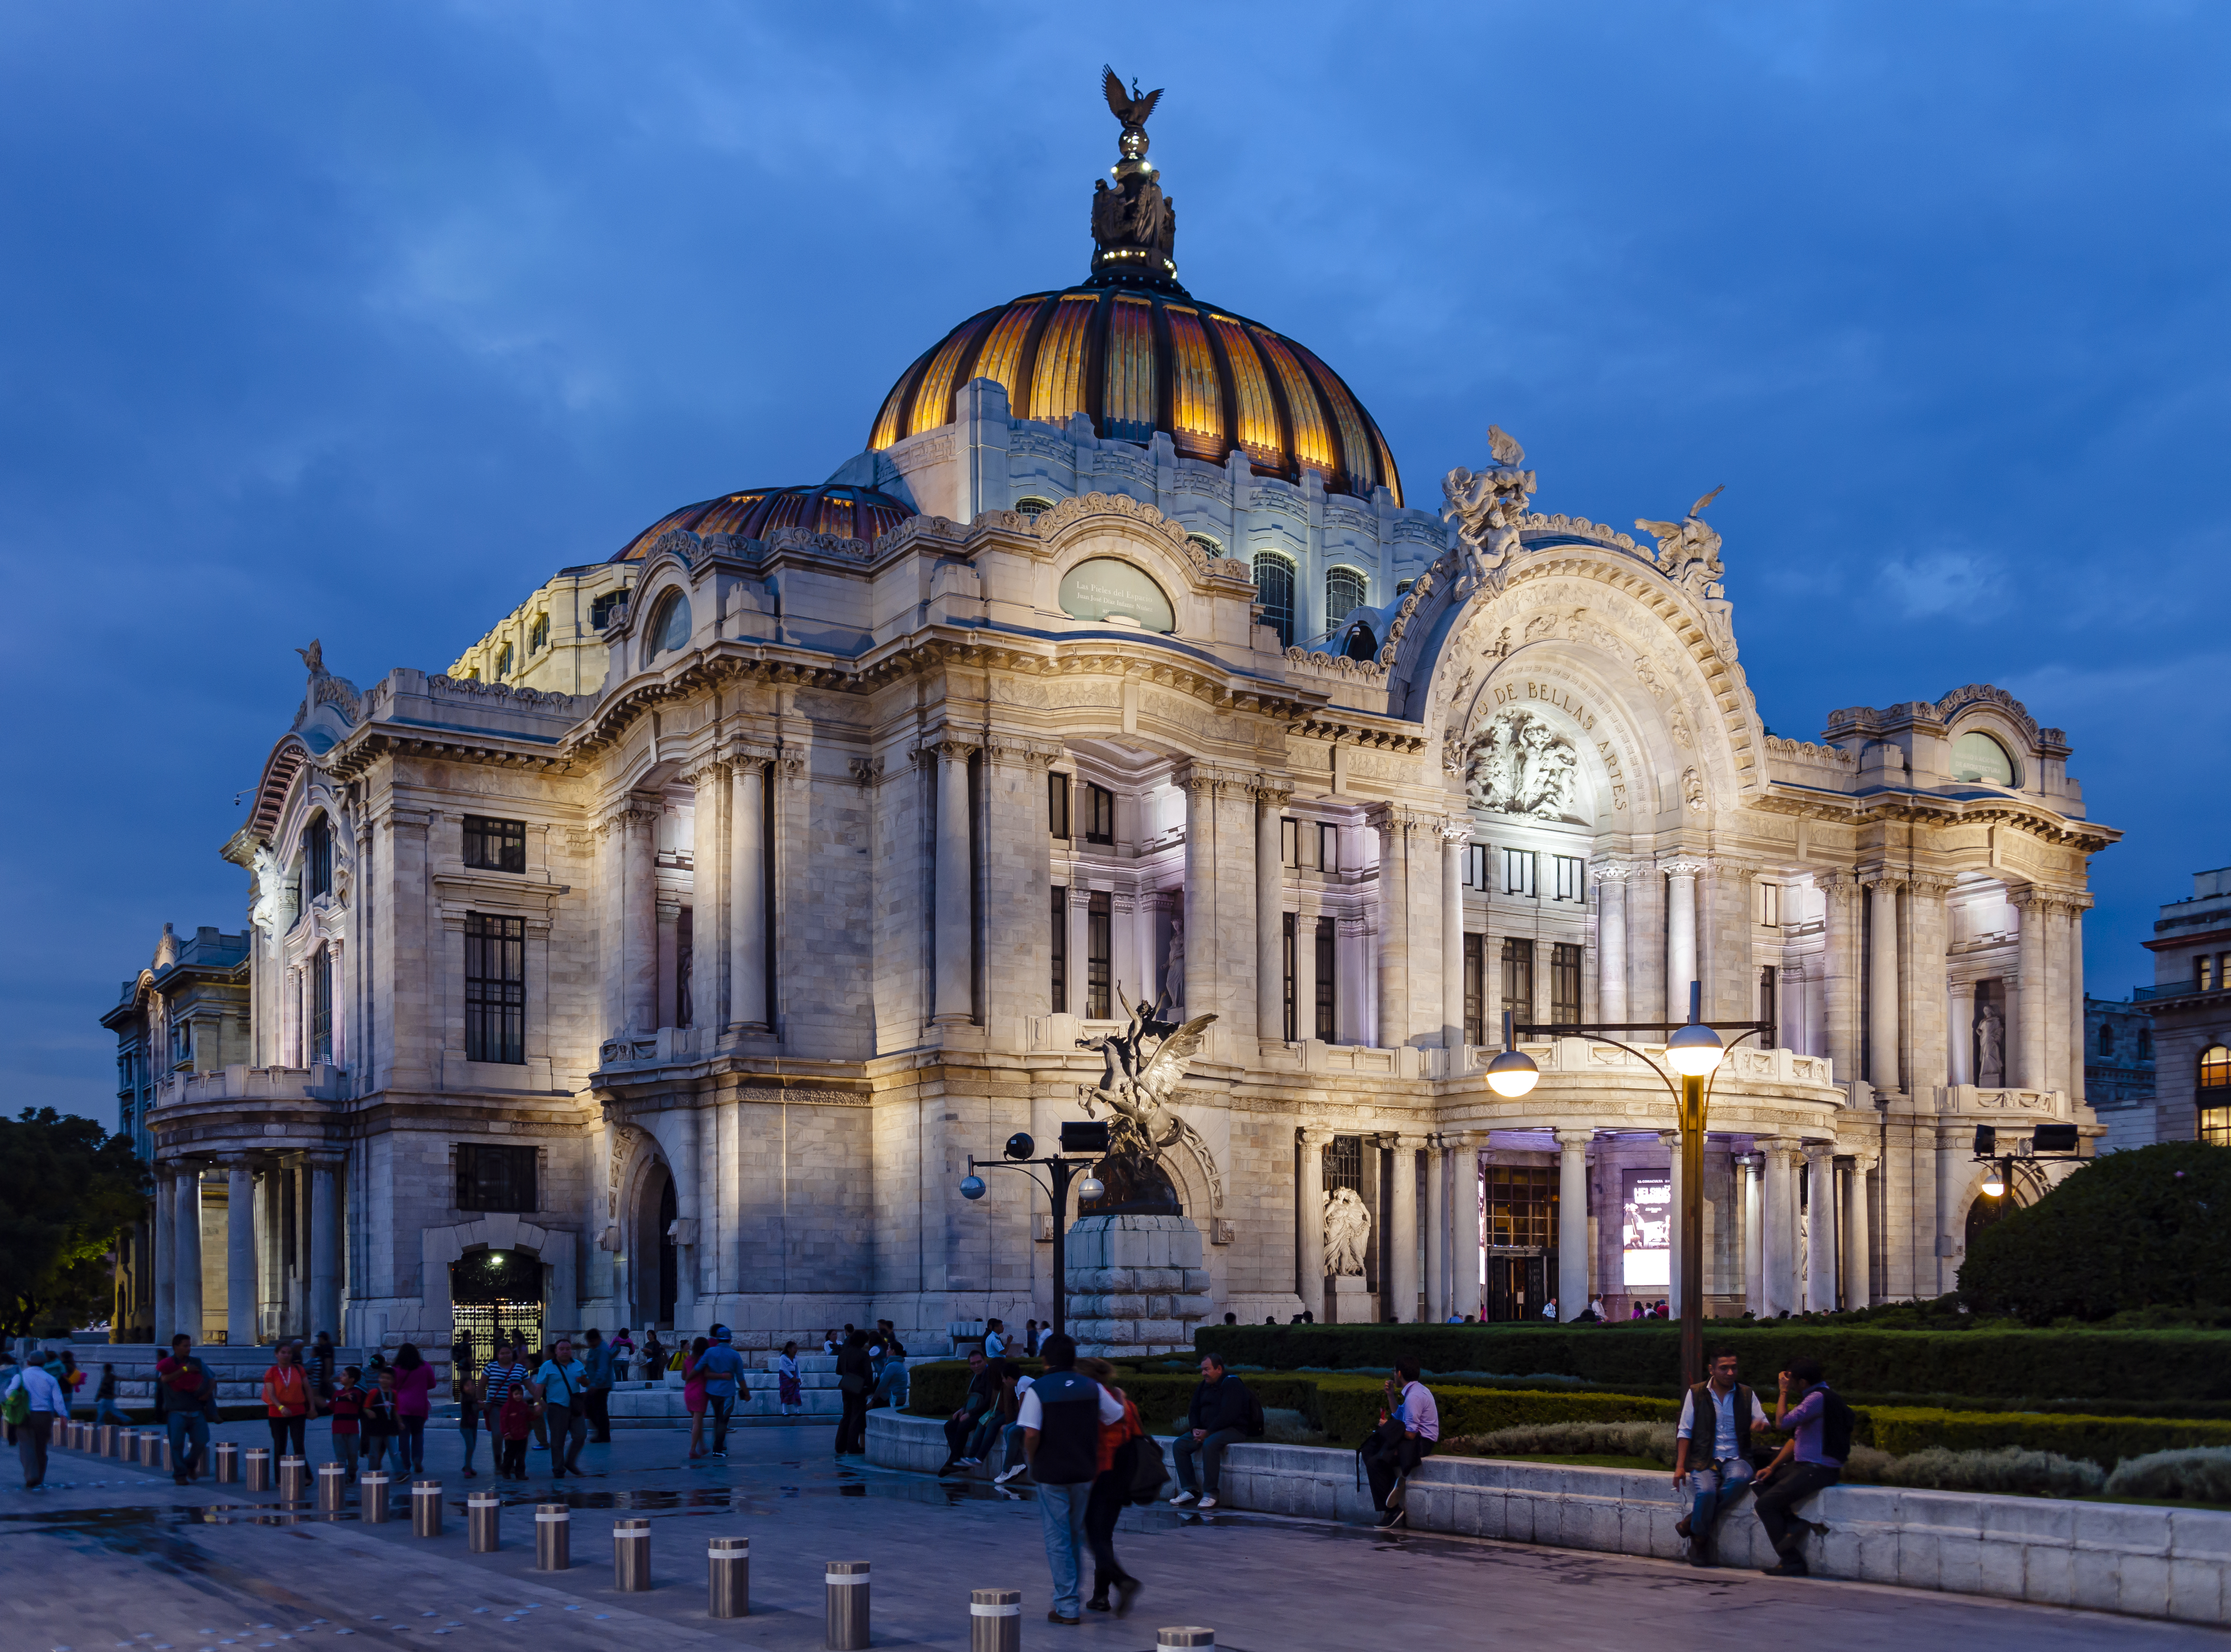 Evening Palacio de Bellas Artes view from southwest